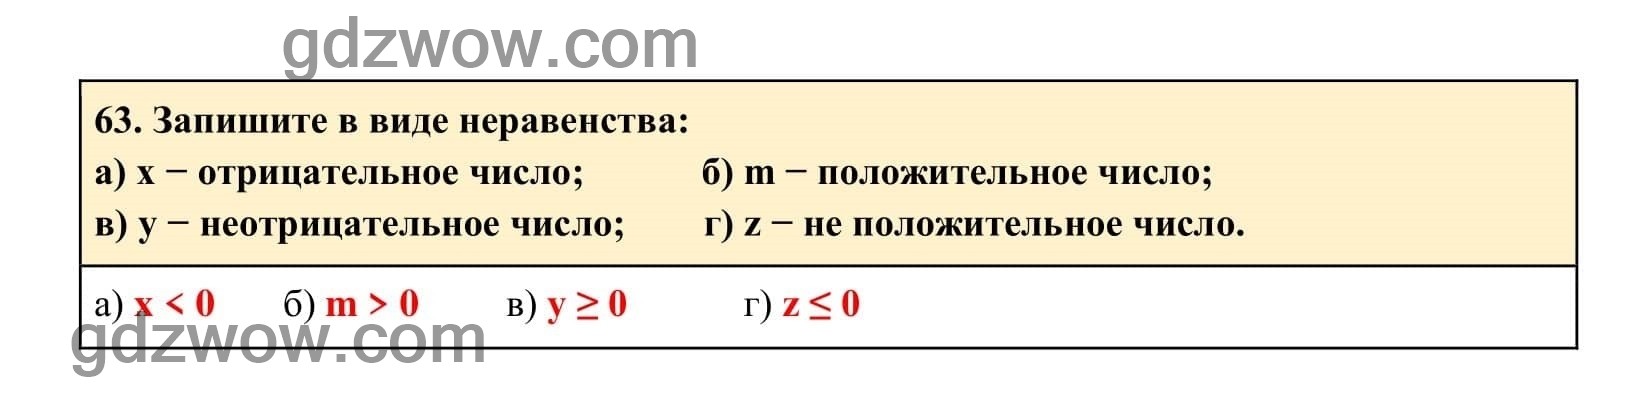 Упражнение 63 - ГДЗ по Алгебре 7 класс Учебник Макарычев (решебник) - GDZwow